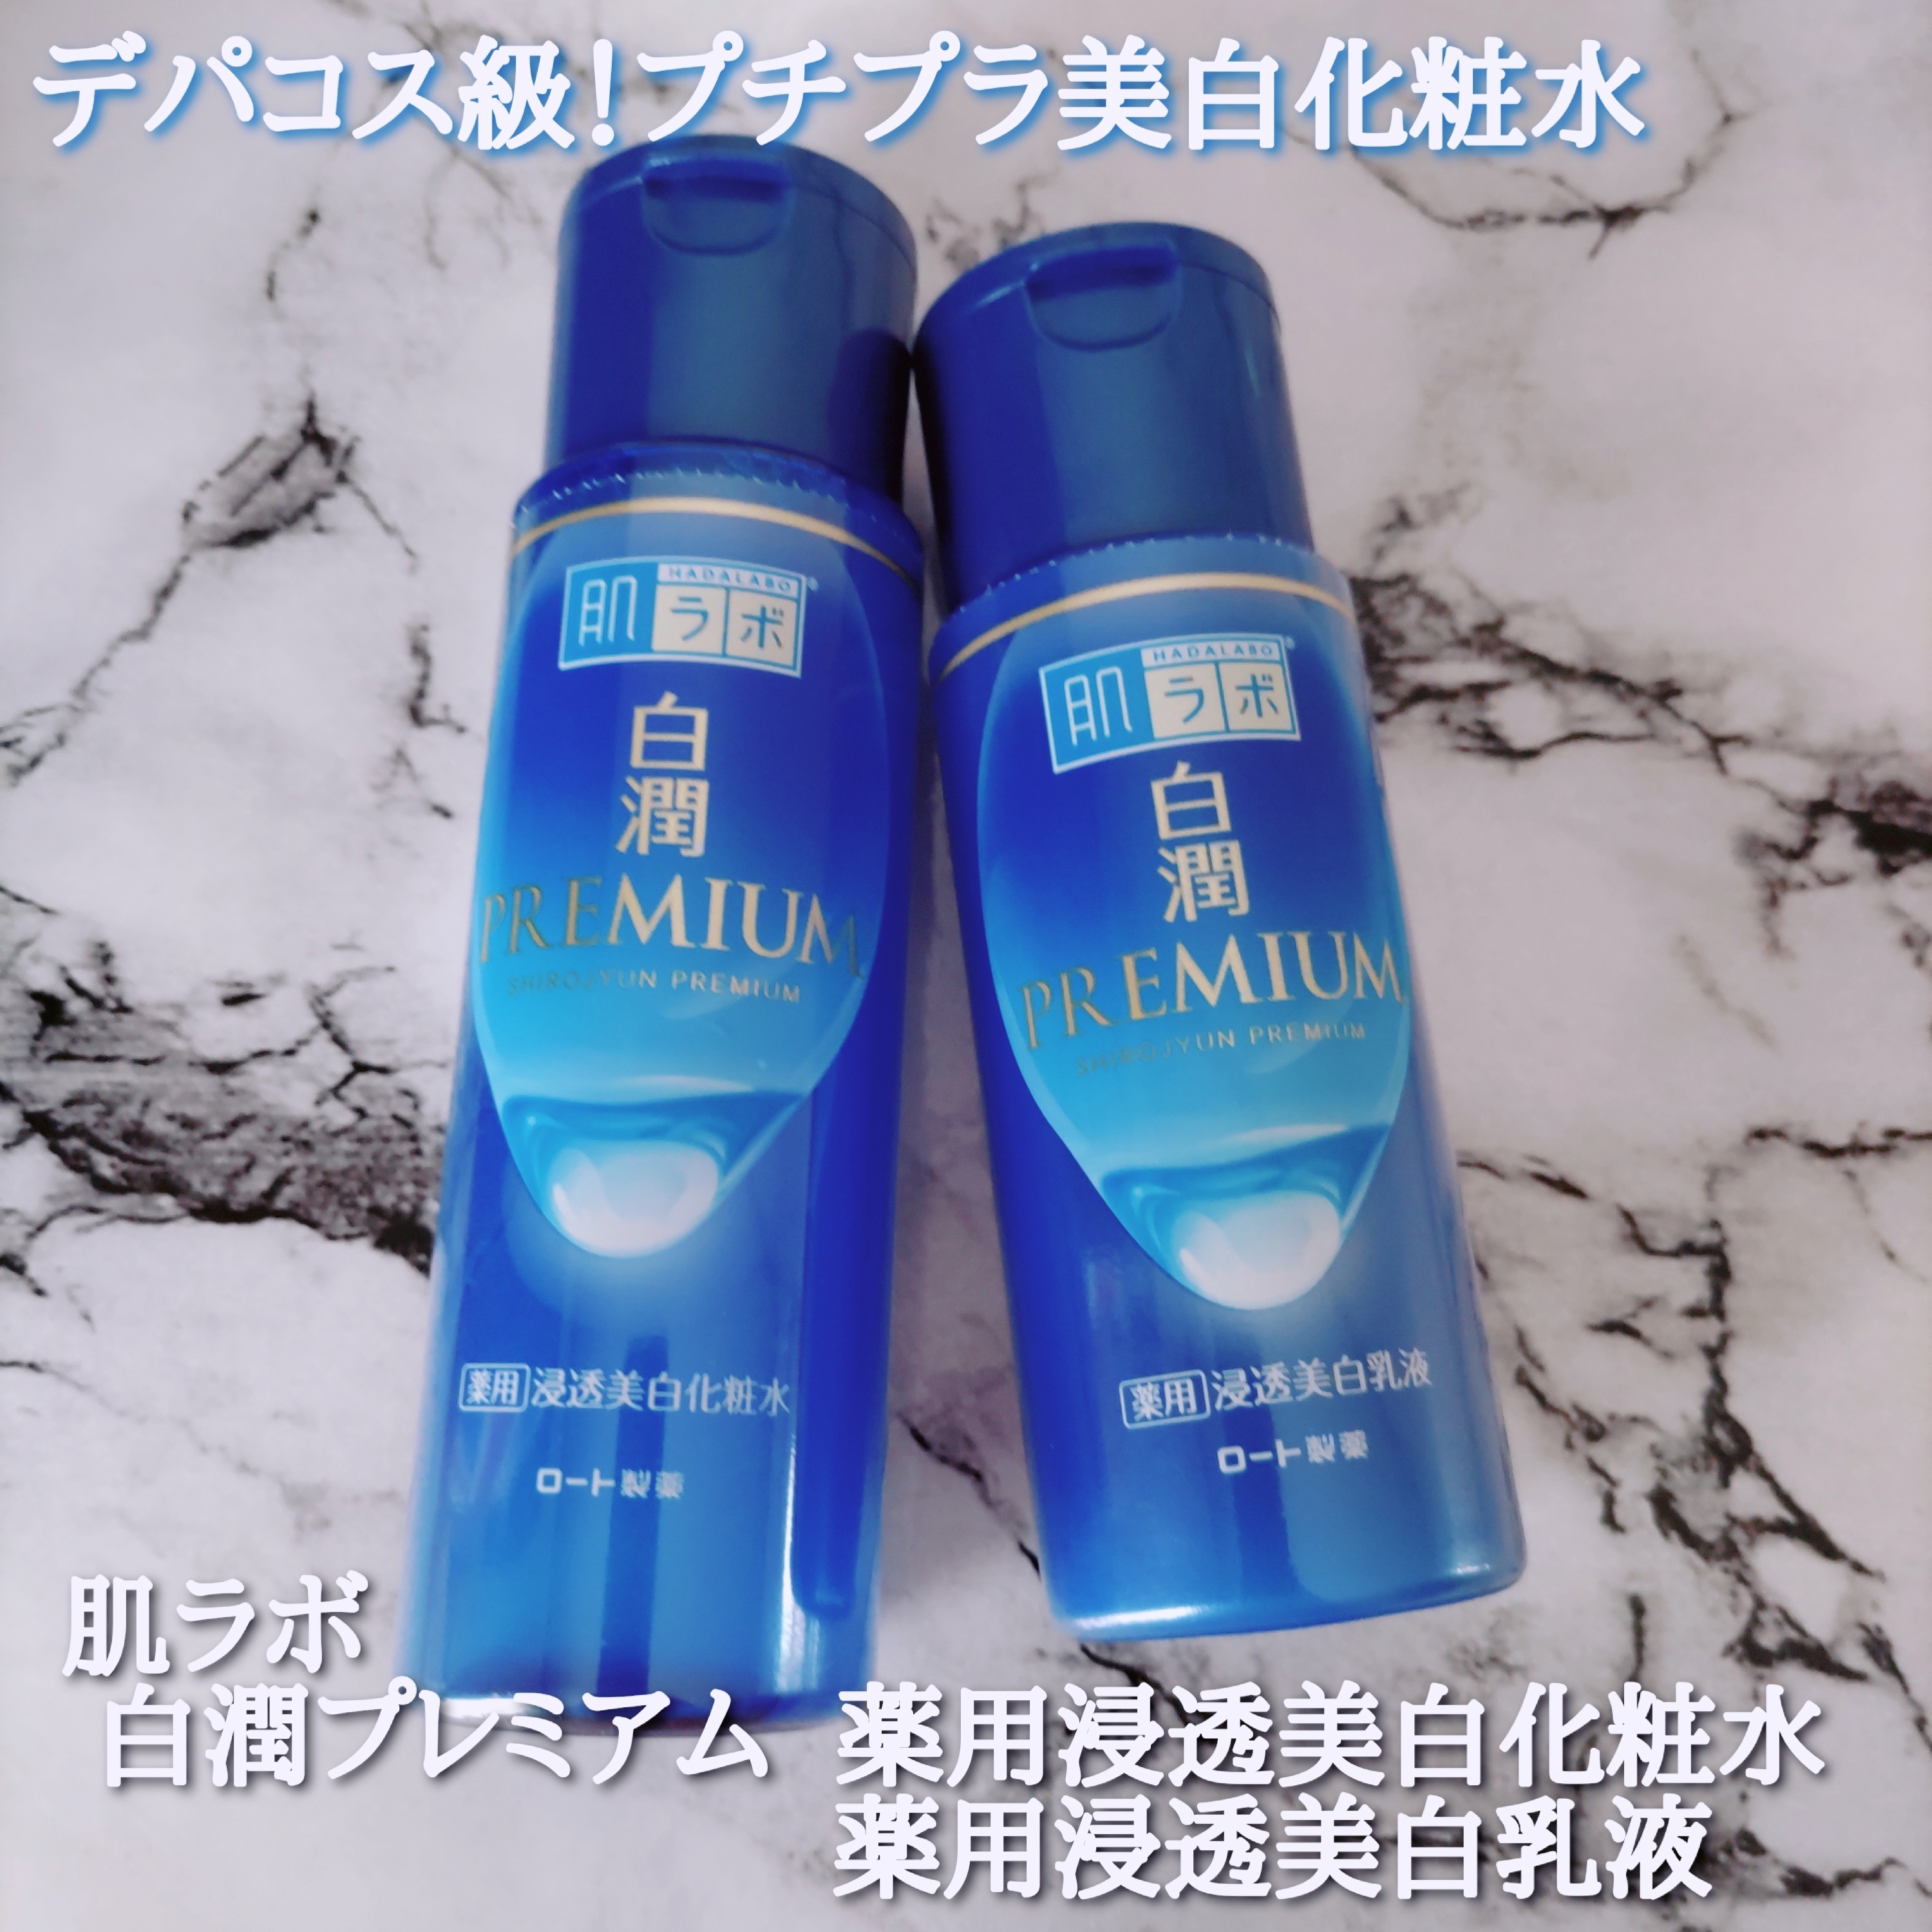 白潤プレミアム 薬用浸透美白化粧水を使ったYuKaRi♡さんのクチコミ画像1